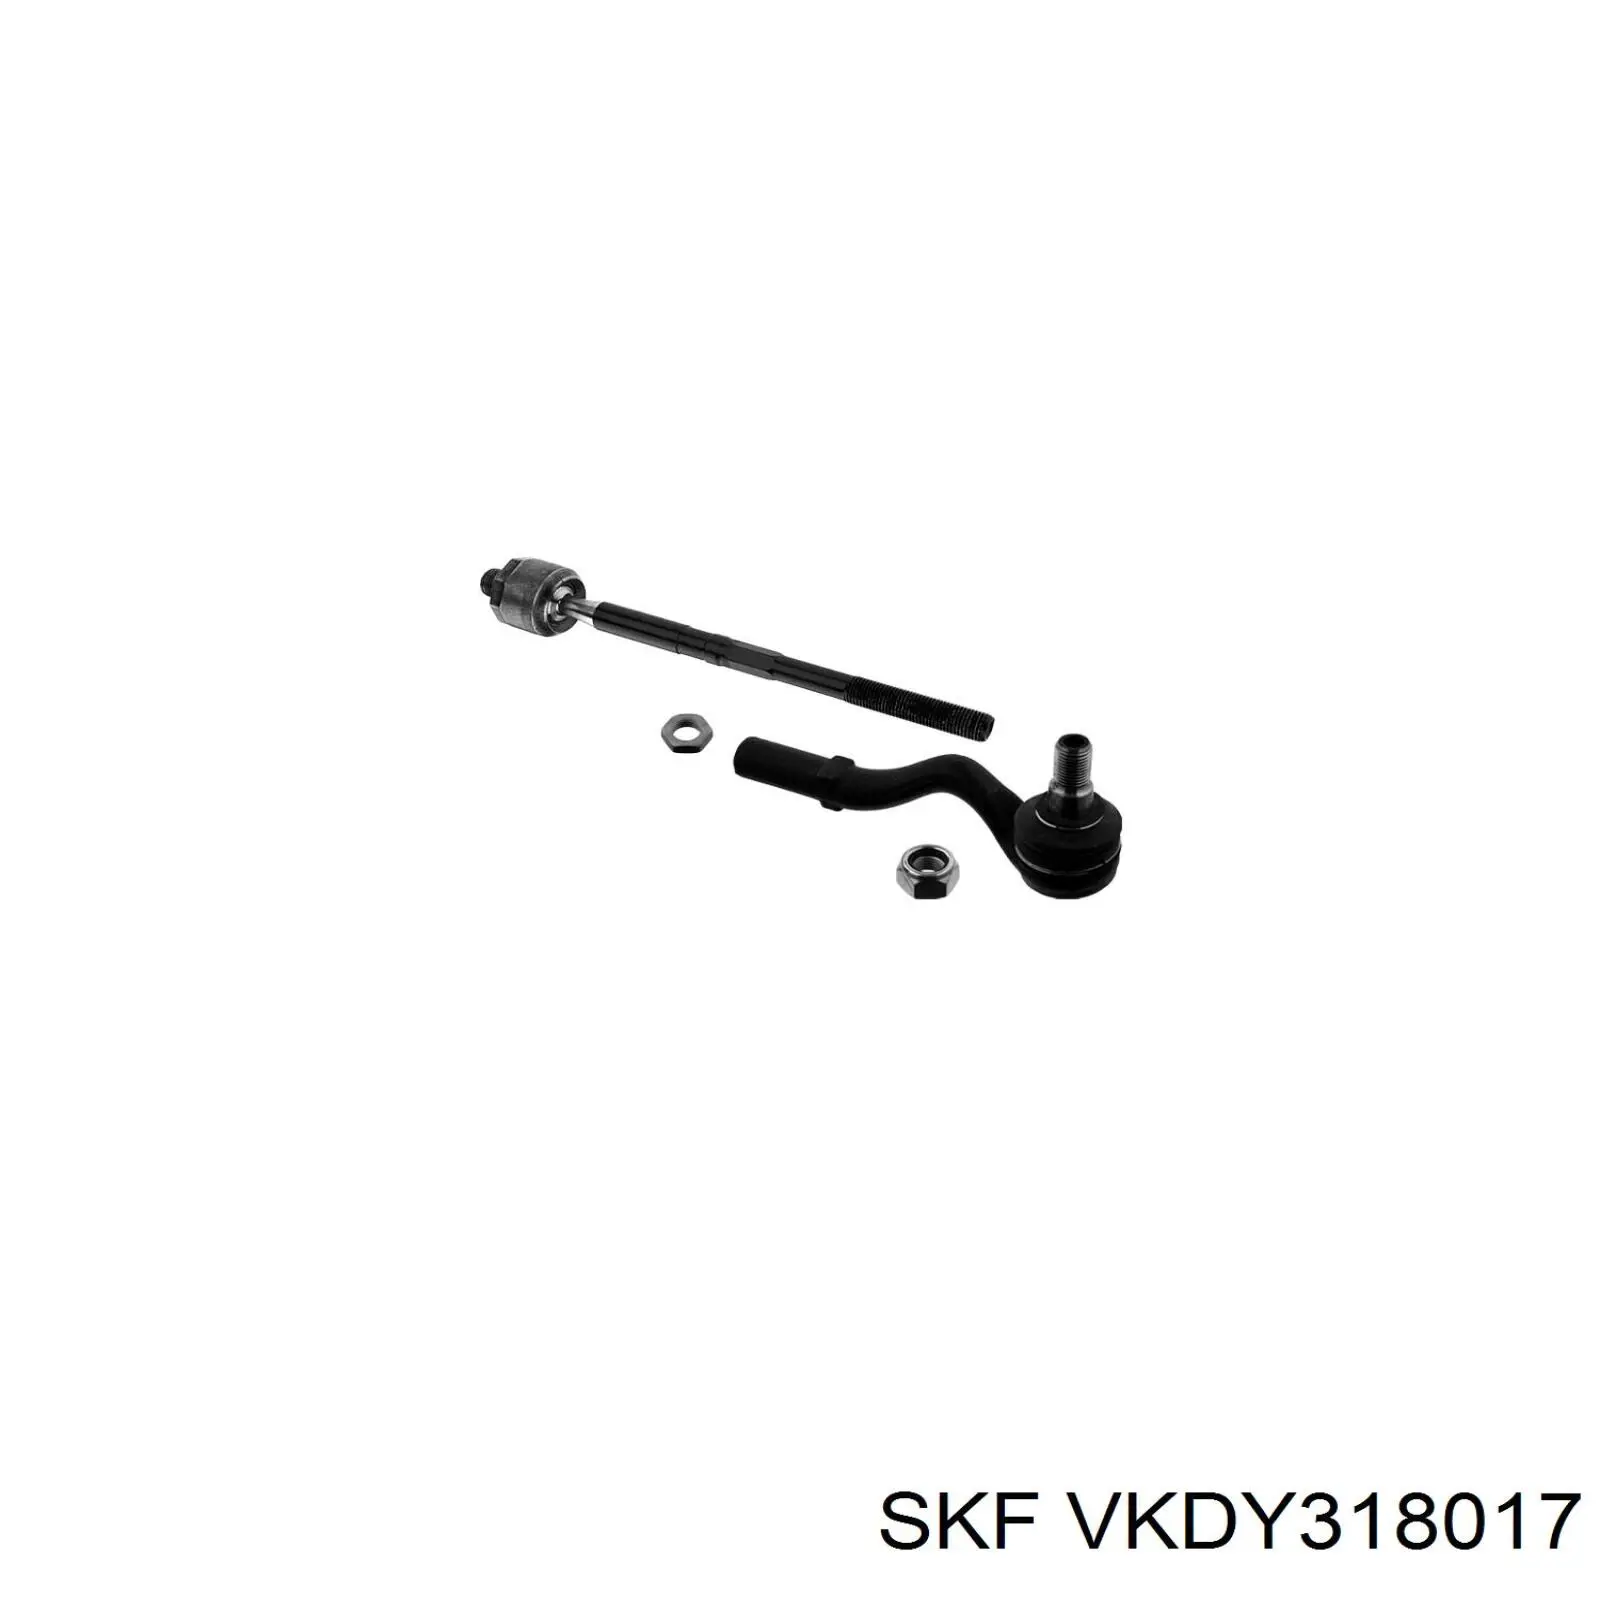 VKDY318017 SKF rótula barra de acoplamiento exterior